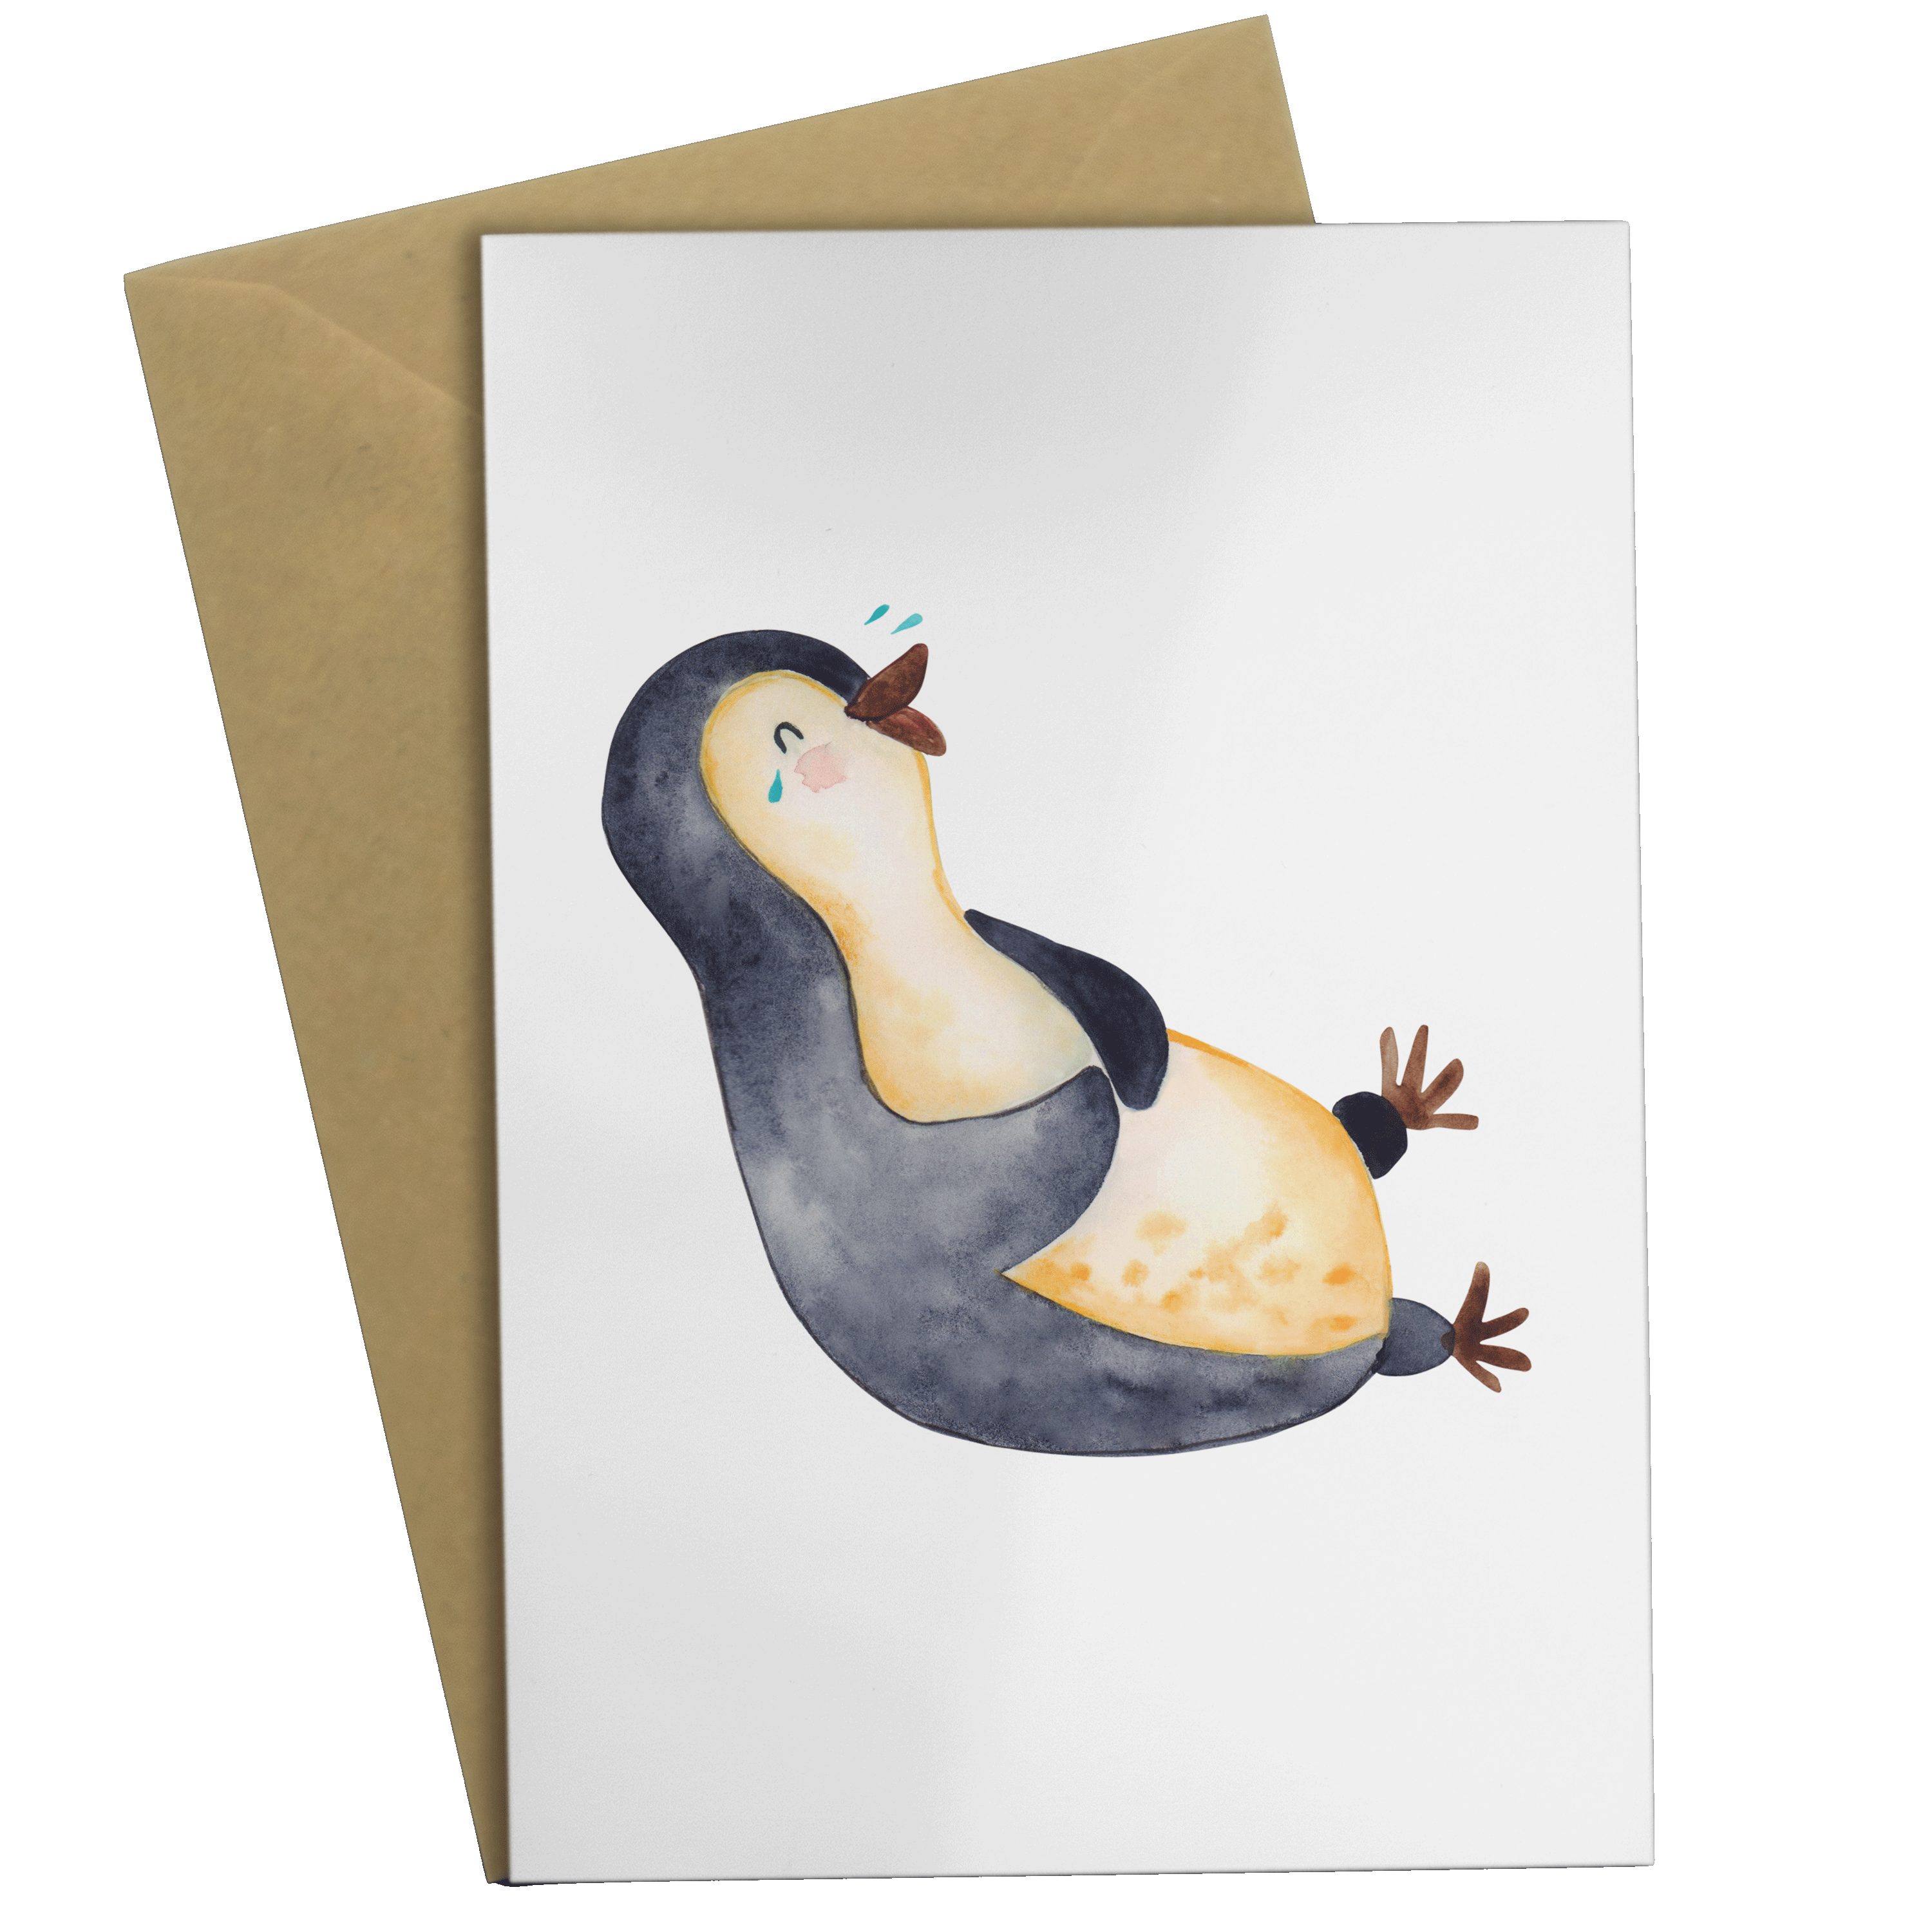 Mr. & Mrs. Panda Grußkarte Pinguin lachend - Weiß - Geschenk, Hochzeitskarte, lol, Karte, Humor